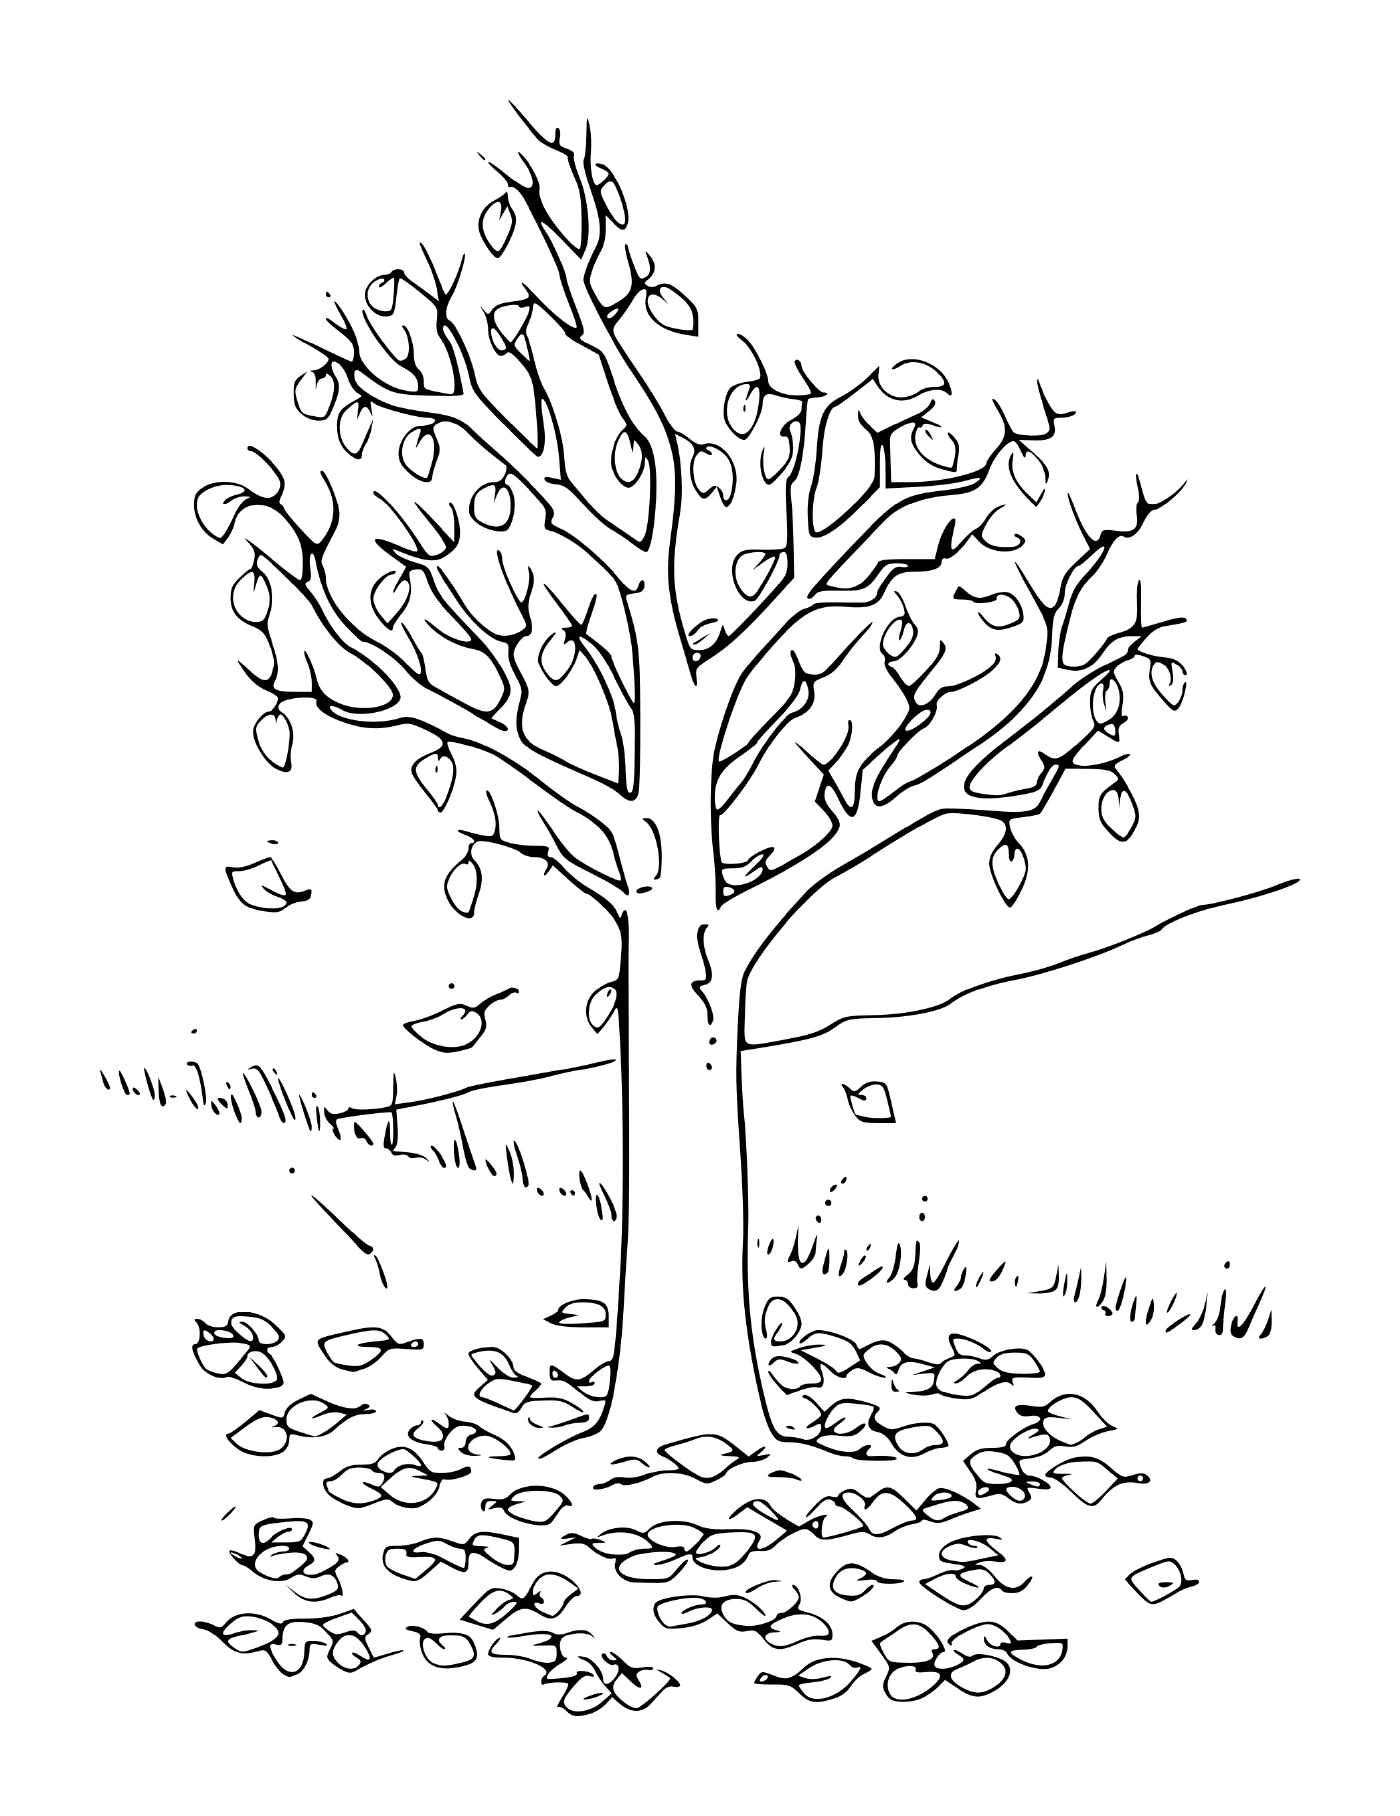  Herbstbaum mit Blättern 